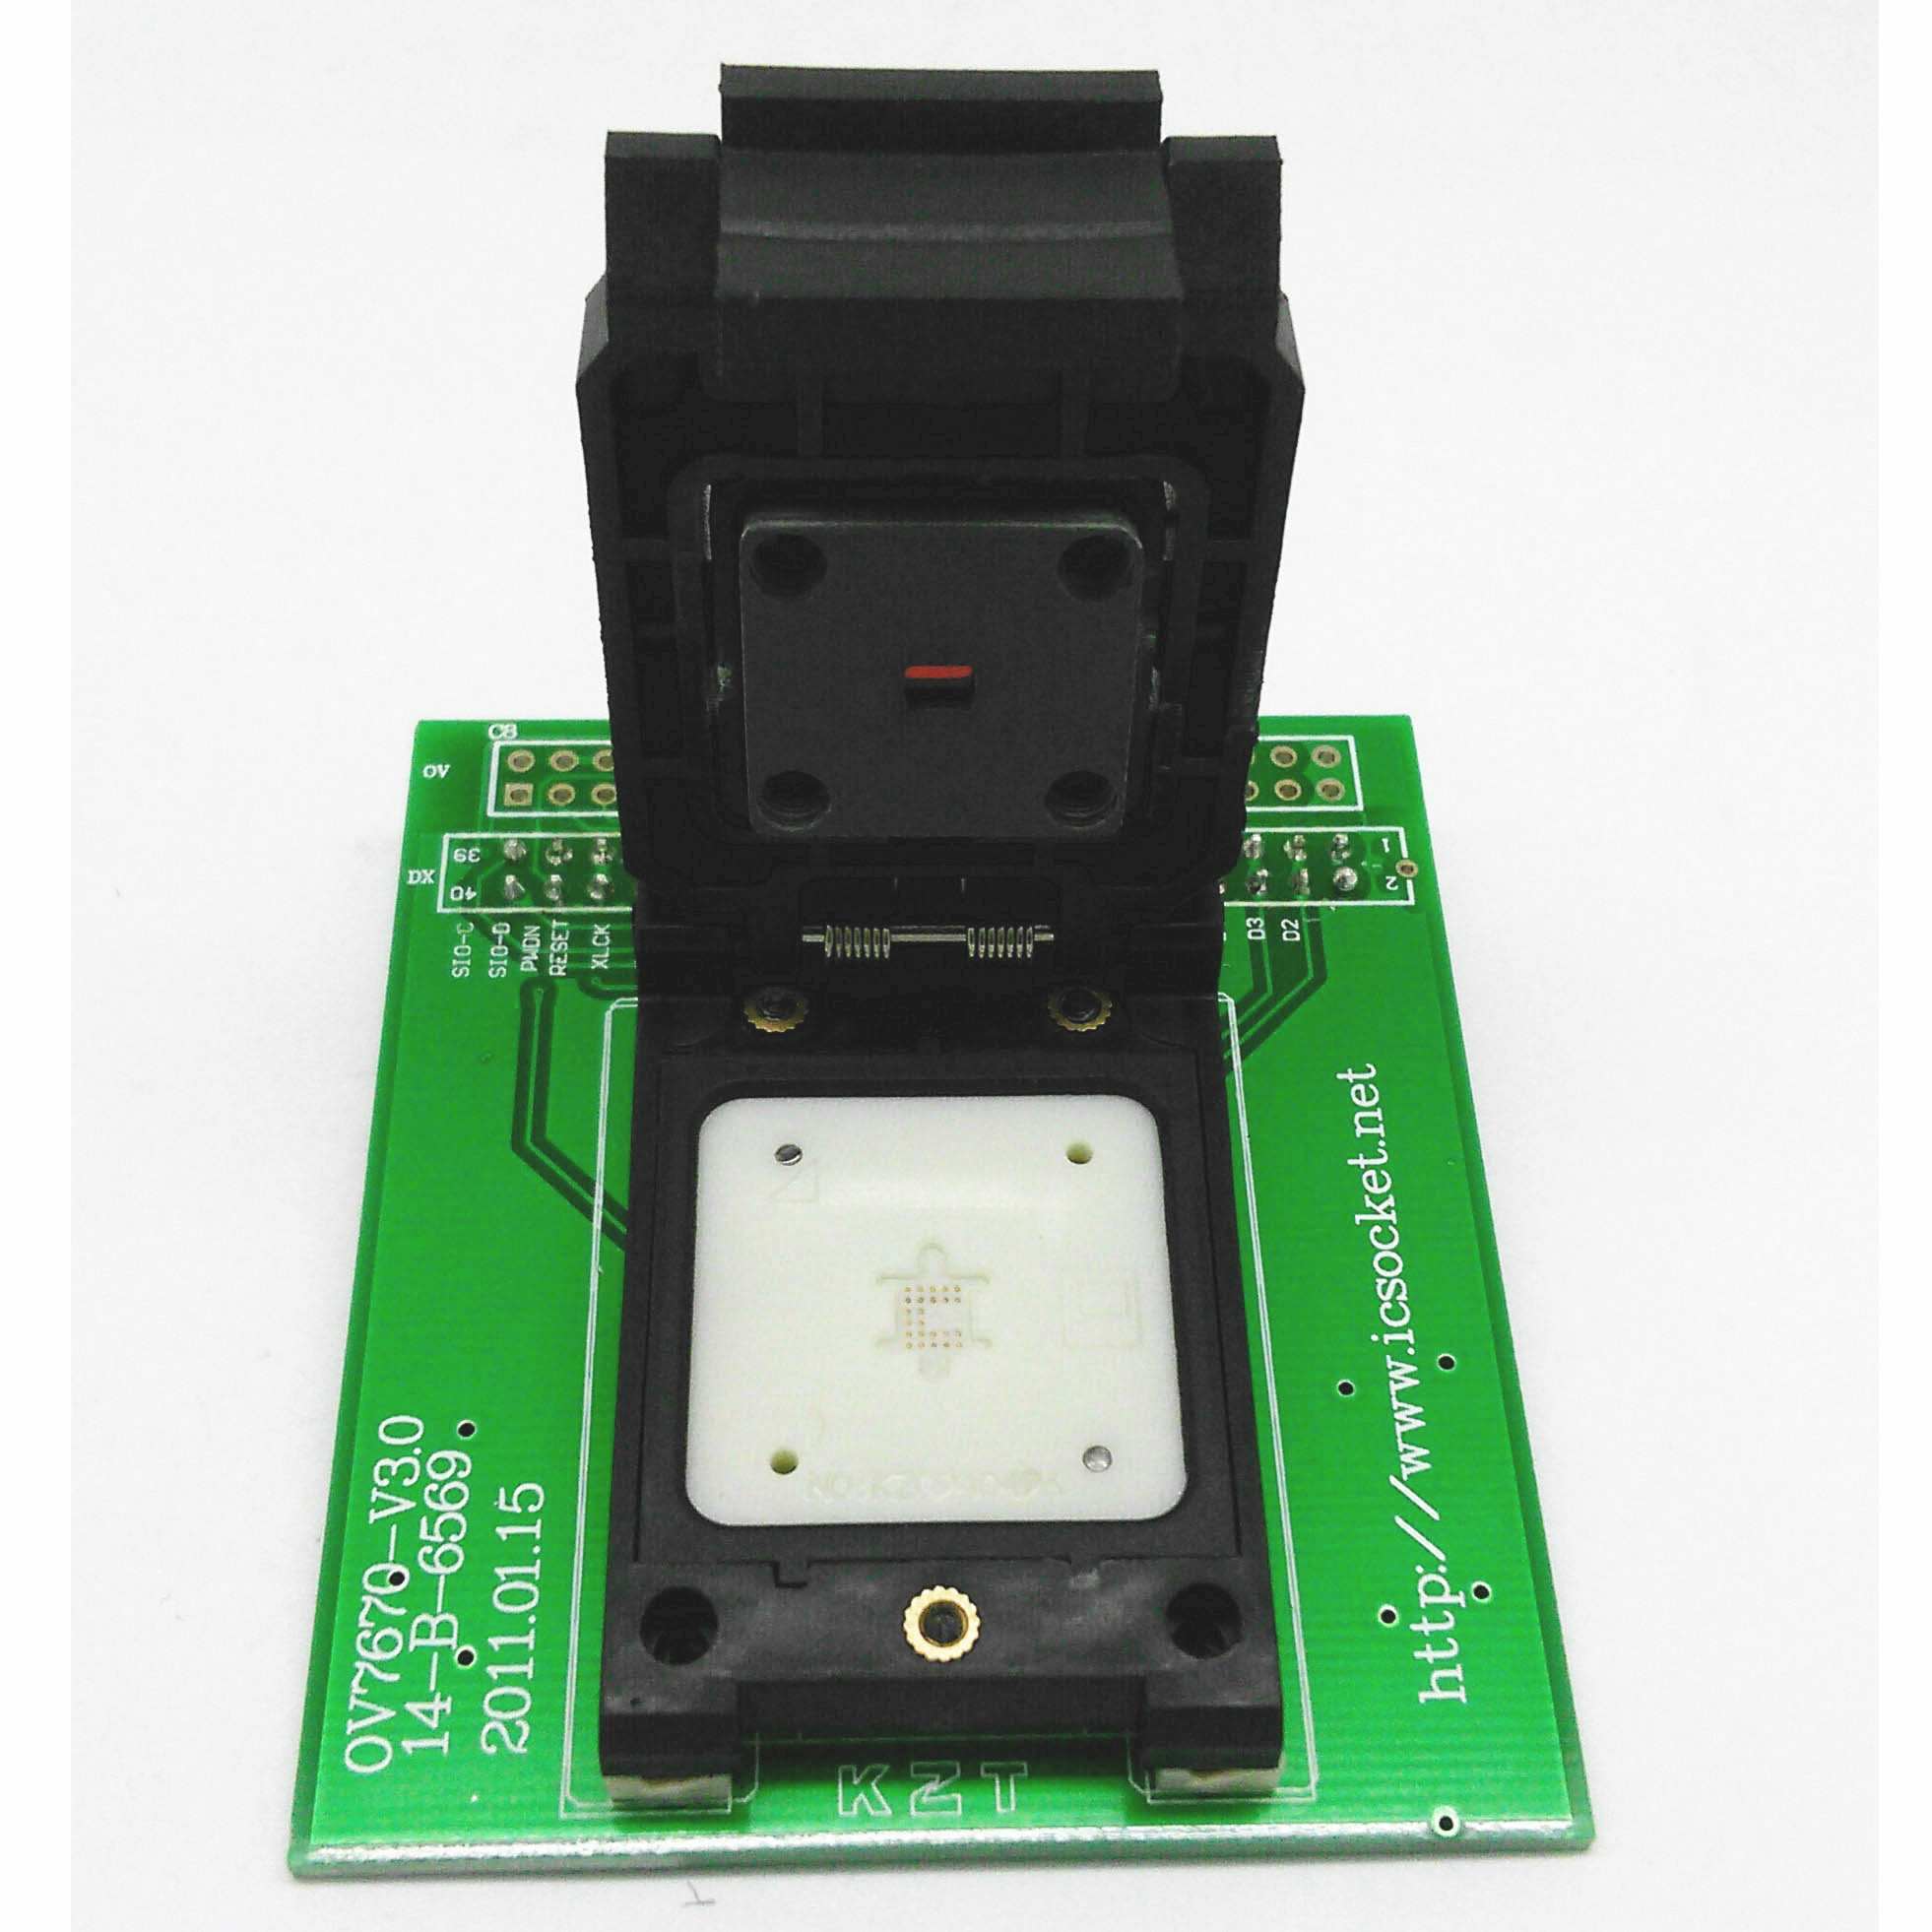 度信接口 OV7670-P 摄像头芯片翻盖探针测试座